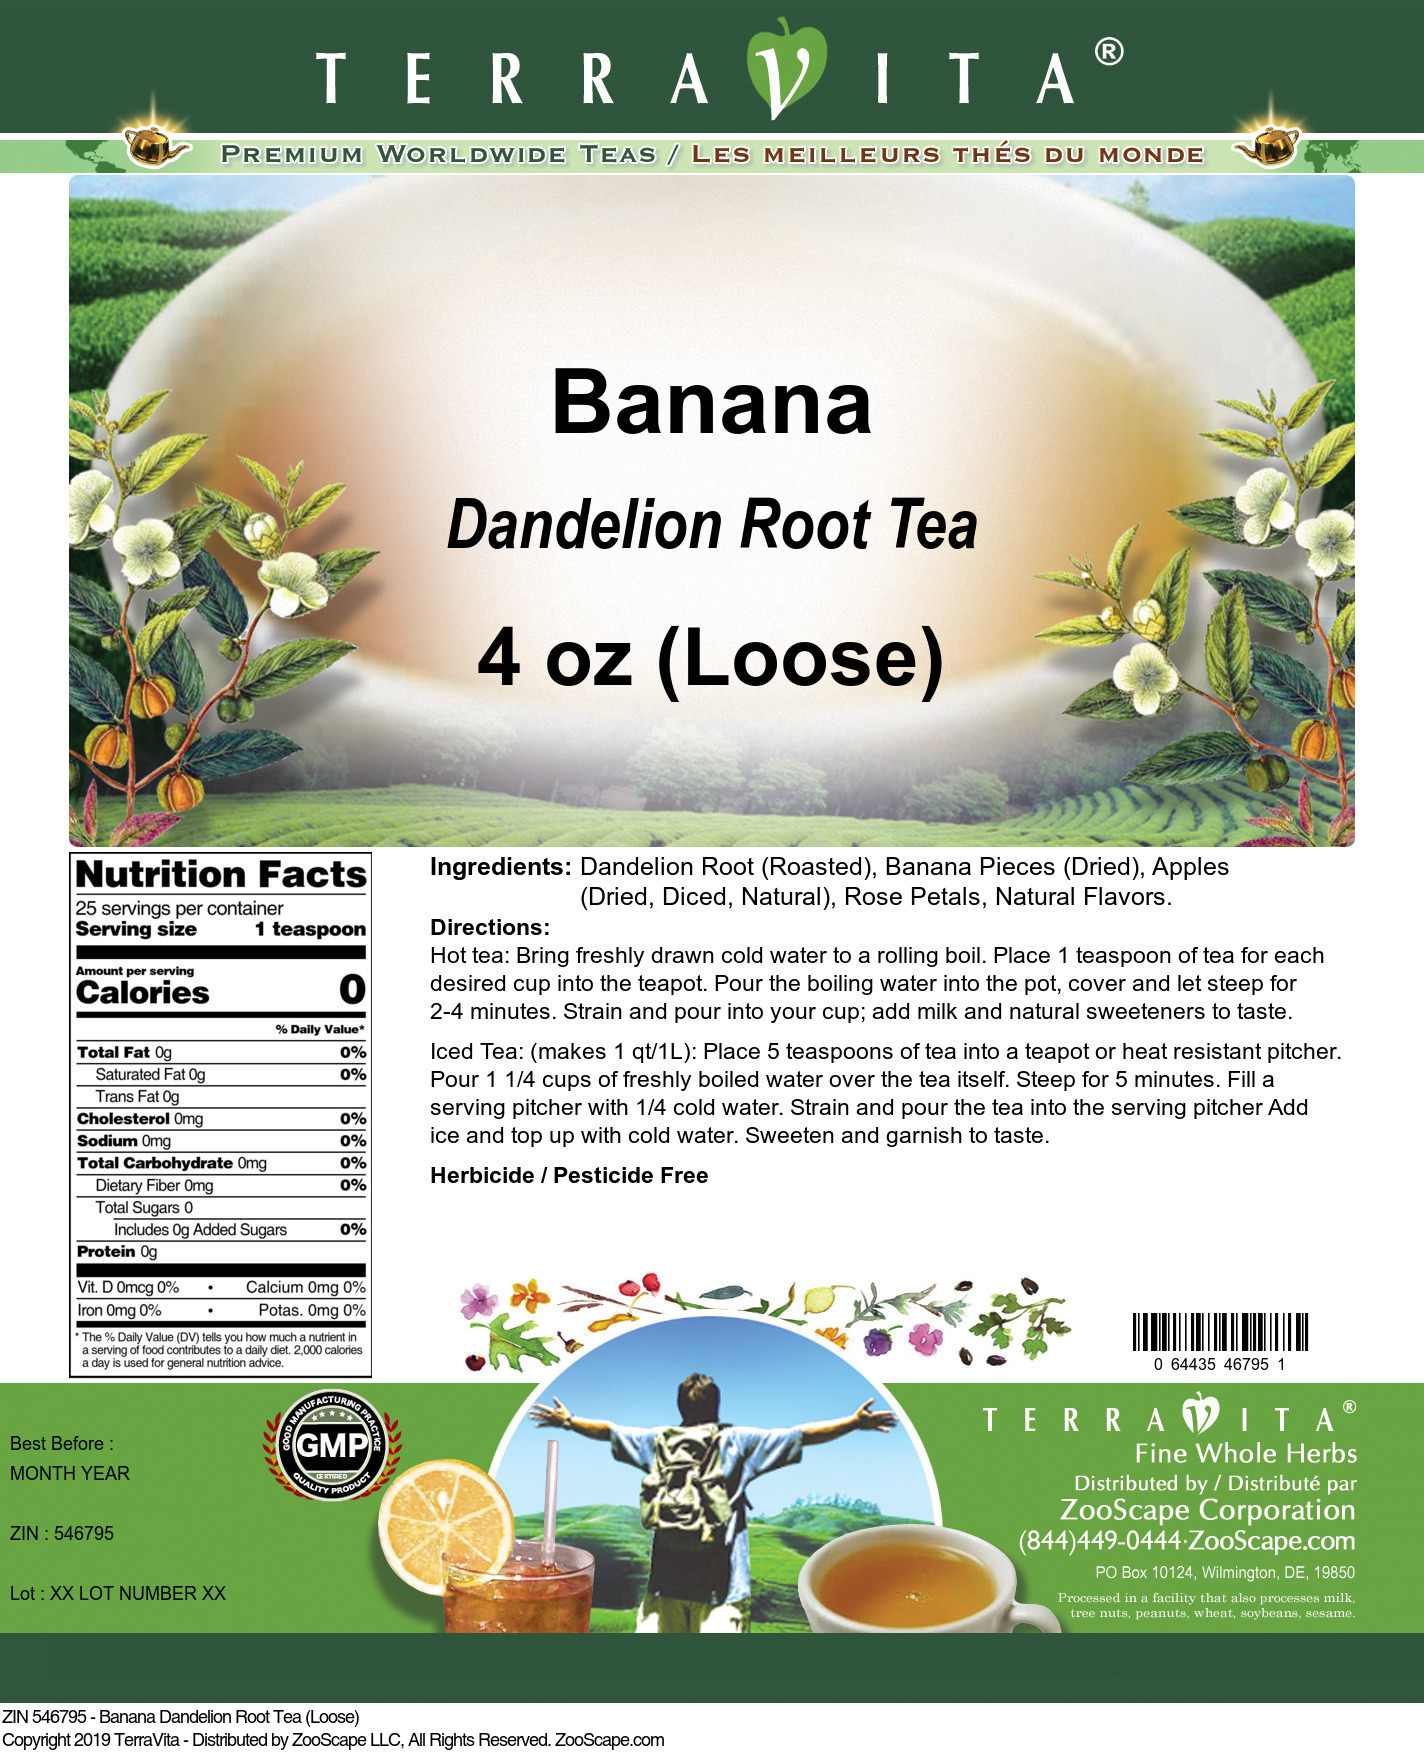 Banana Dandelion Root Tea (Loose) - Label